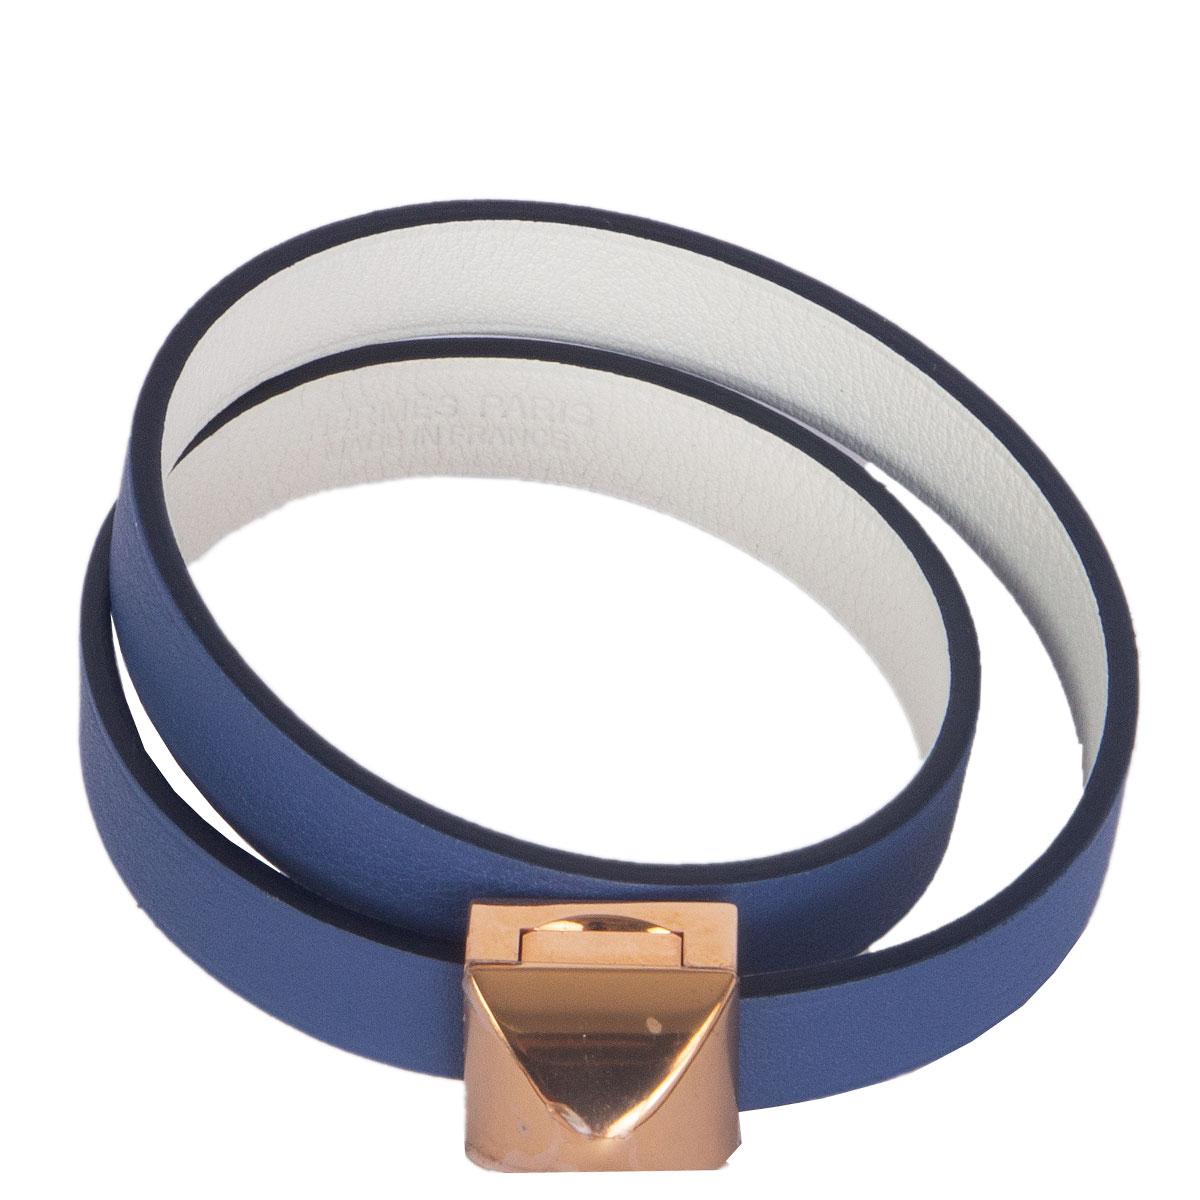 100% authentique Hermès 'Medor Infini Double Tour' en cuir de veau bleu brighton et blanc Swift, avec matériel plaqué or rose. Neuf avec plastique de protection sur le matériel. Livré avec boîte.

Mesures
Taille de l'étiquette	T2
Largeur	0.9cm